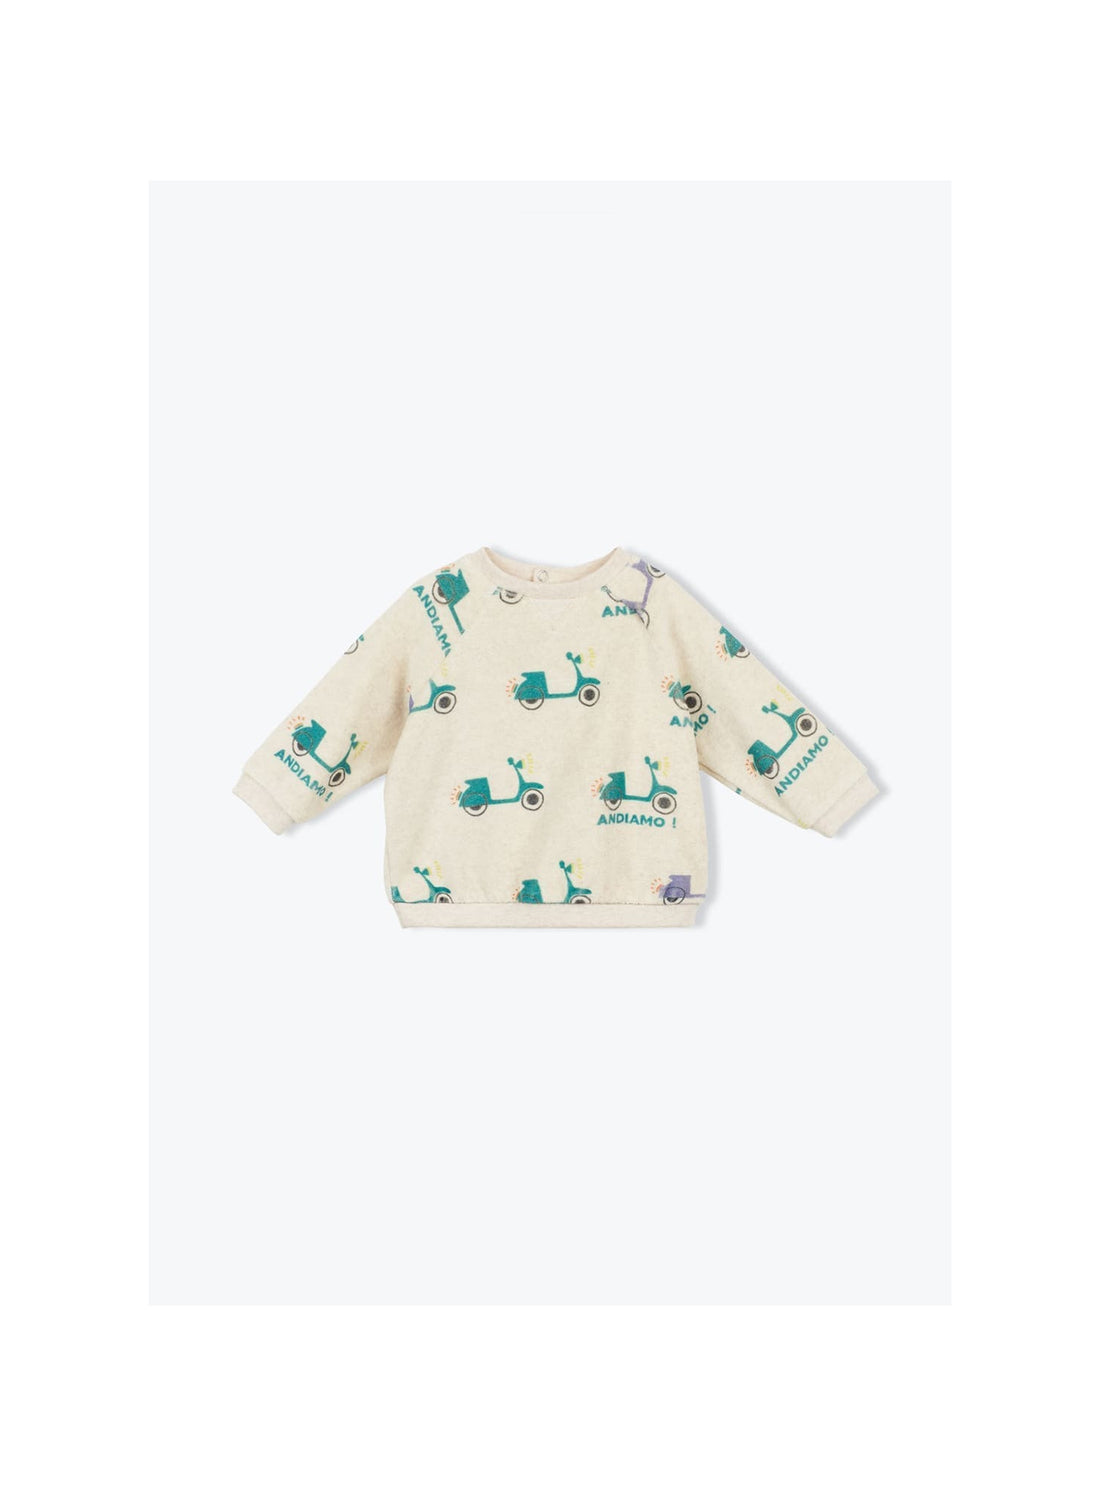 Süßes Frottee-Baby-Sweatshirt mit Scooter Motiven für Mädchen und Jungen von Arsène et les Pipelettes.